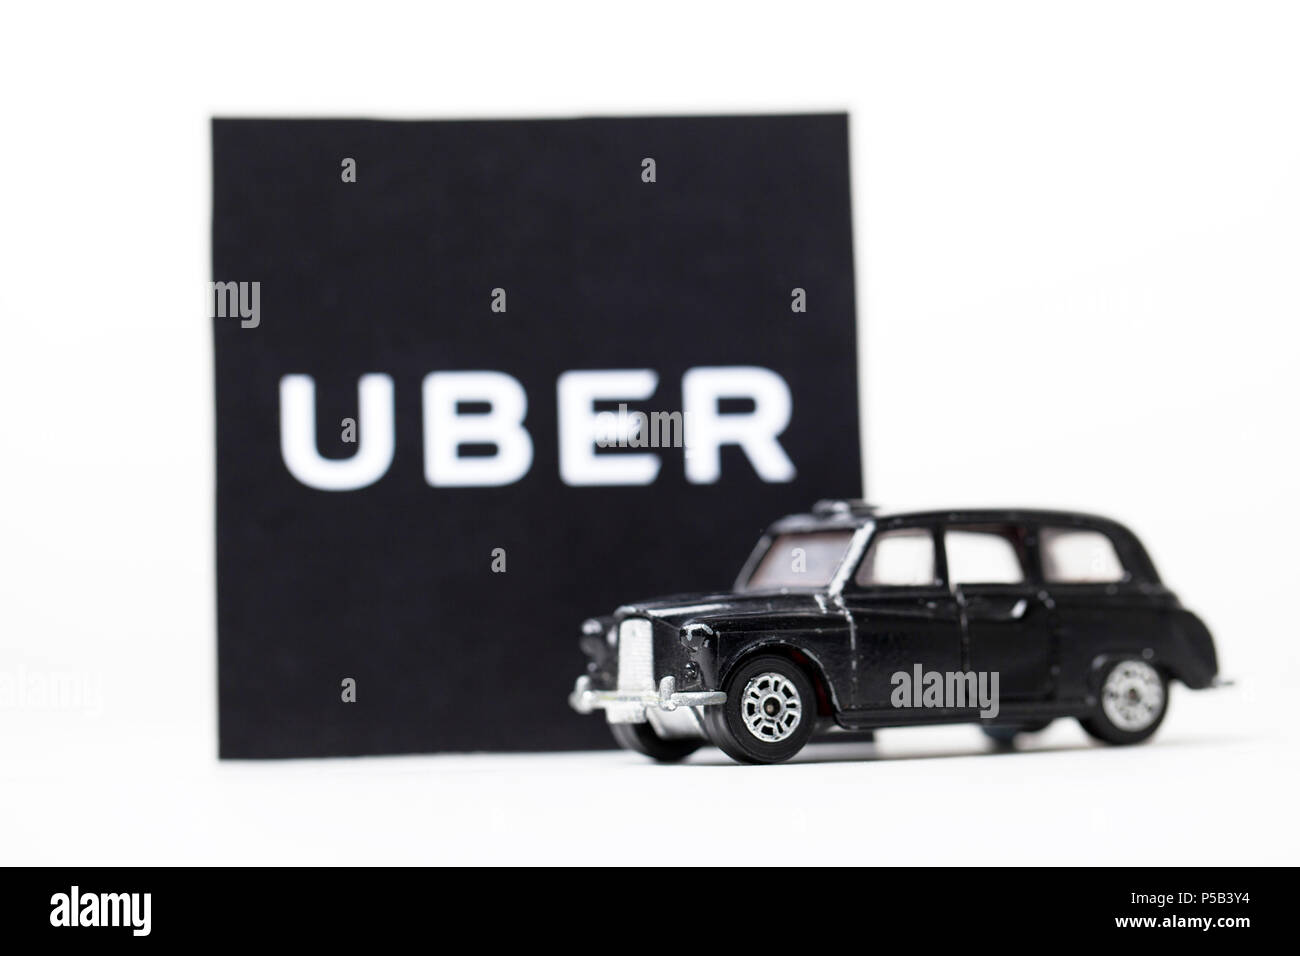 Londres, Royaume-Uni - 23 mars 2017 : une photographie de l'Uber avec logo noir un style London taxi voiture jouet. Uber est un service de transport style taxi populaires app Banque D'Images